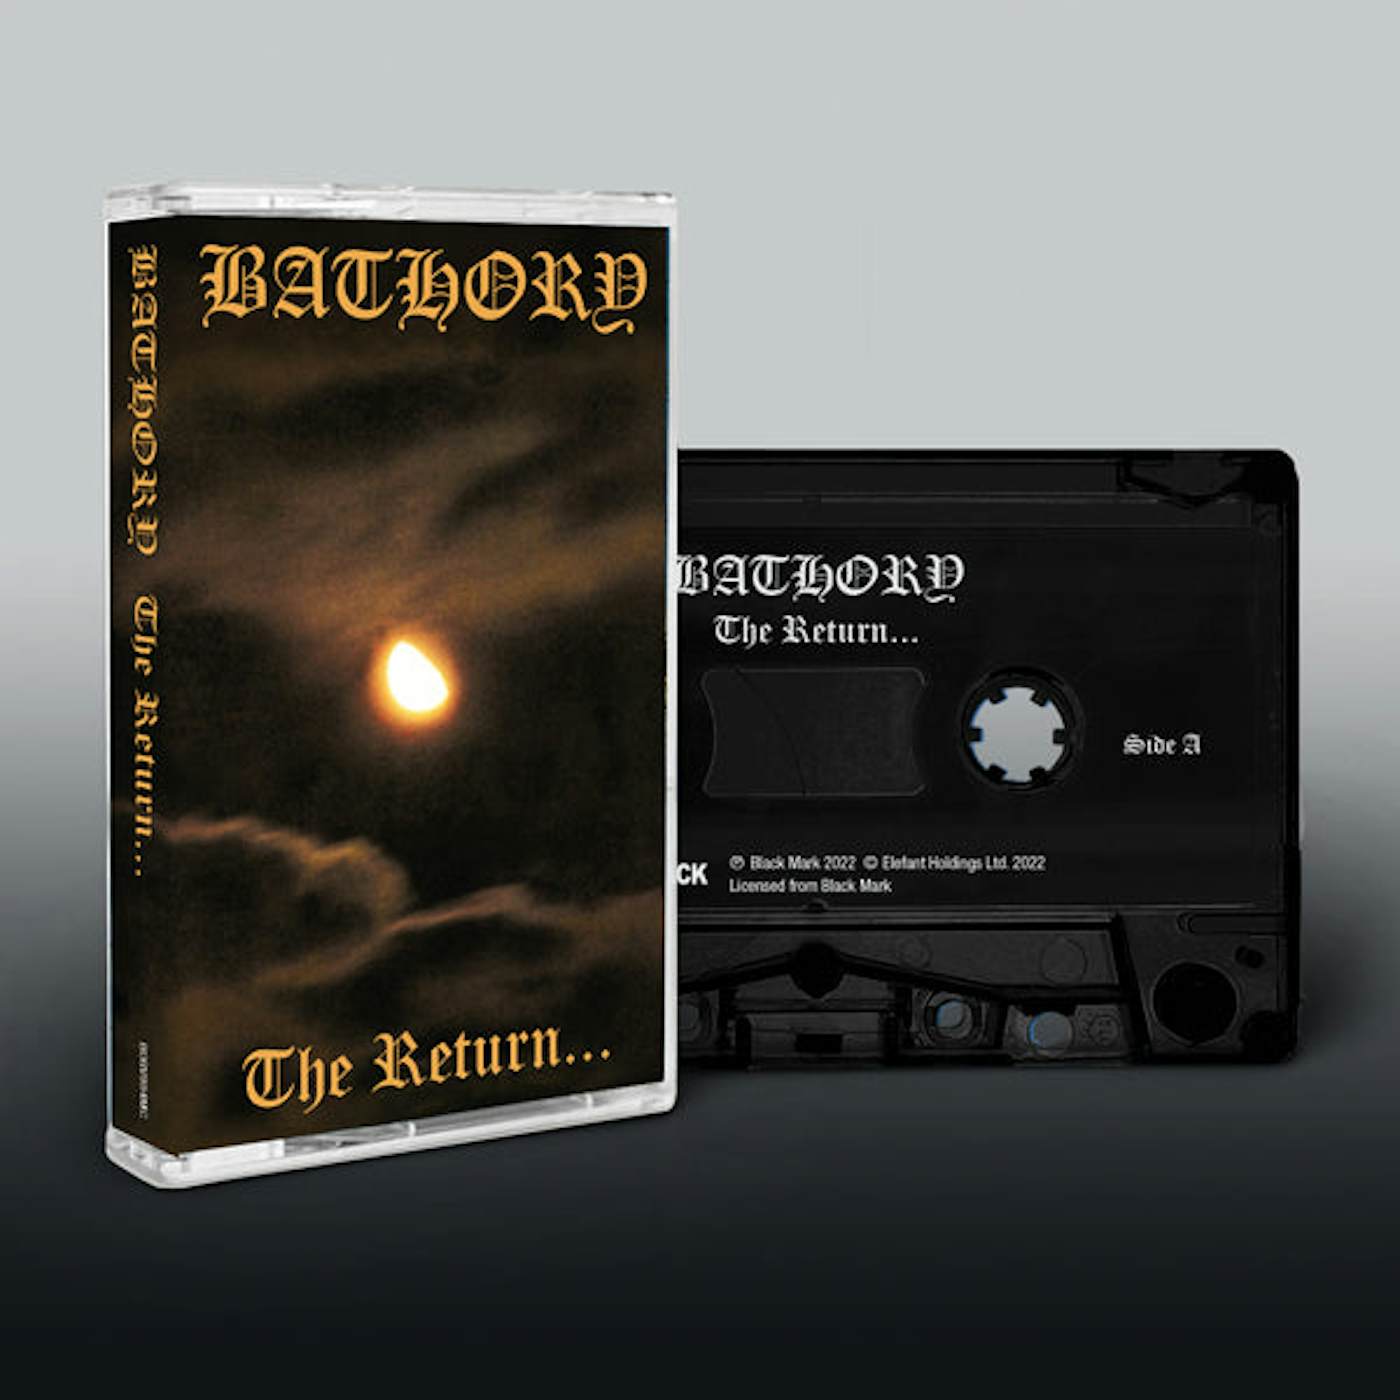 Bathory Music Cassette - The Return...